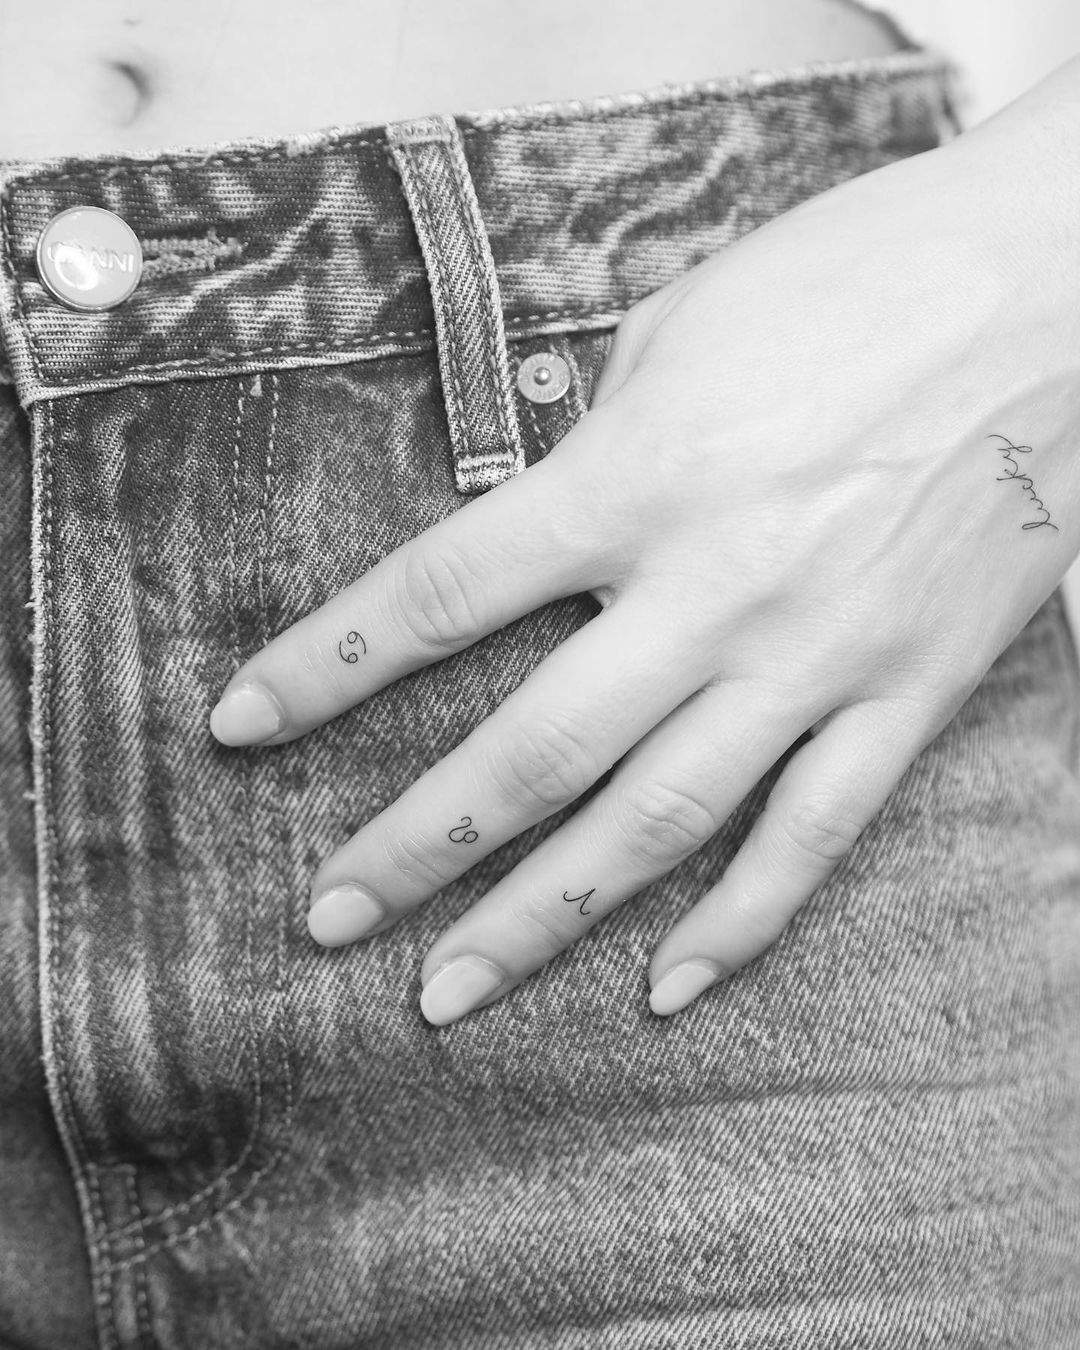 Signos del zodiaco tatuados en la cara externa de los dedos